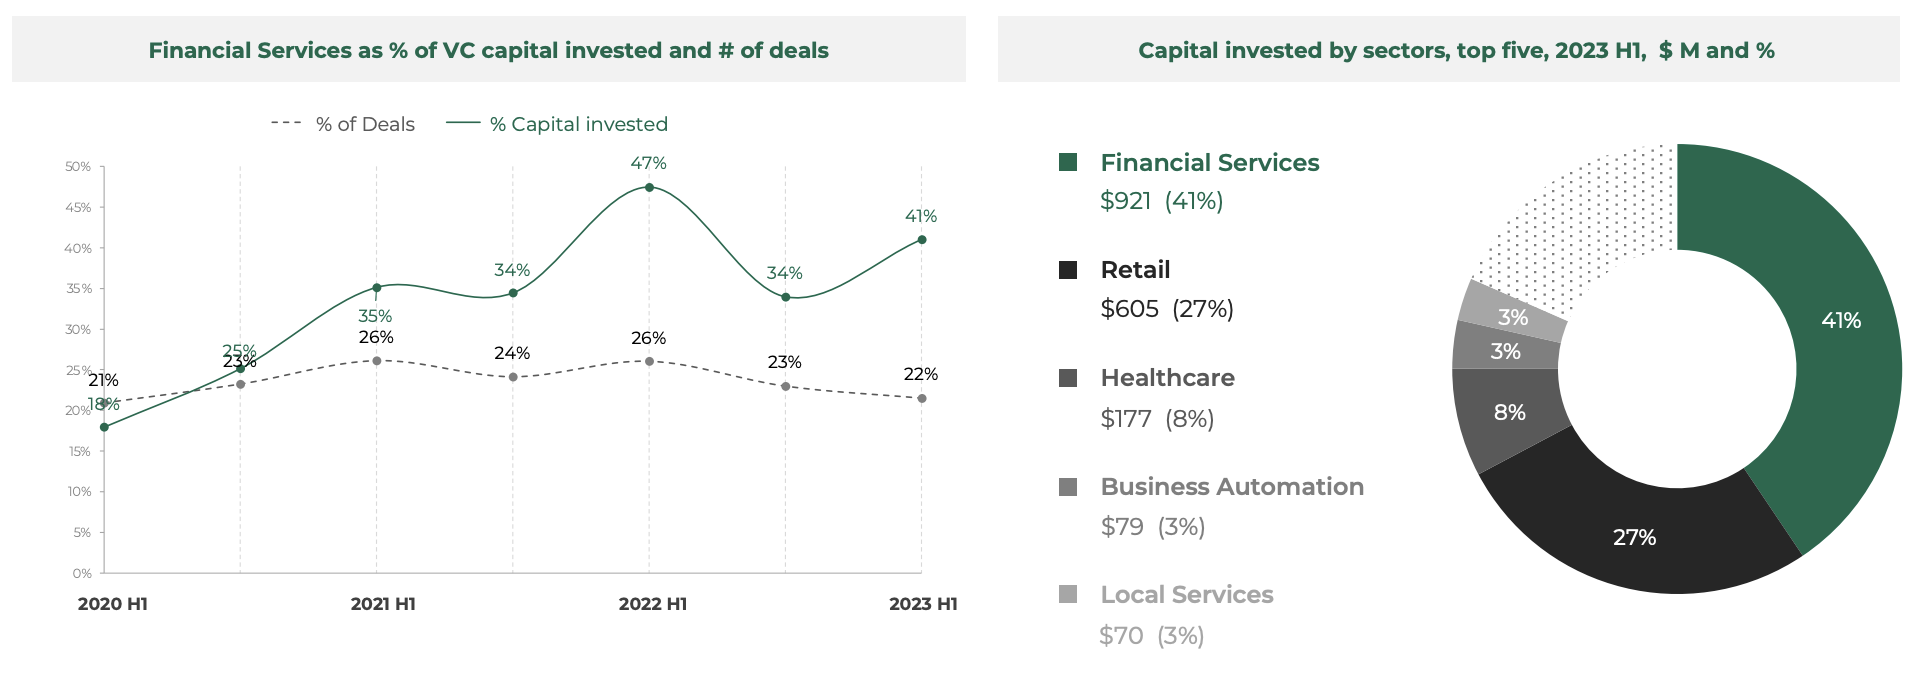 Delež finančnih storitev kot % vloženega tveganega kapitala in število poslov, Vir: Southeast Asia Tech Investment 2023 H1, Cento Ventures, december 2023